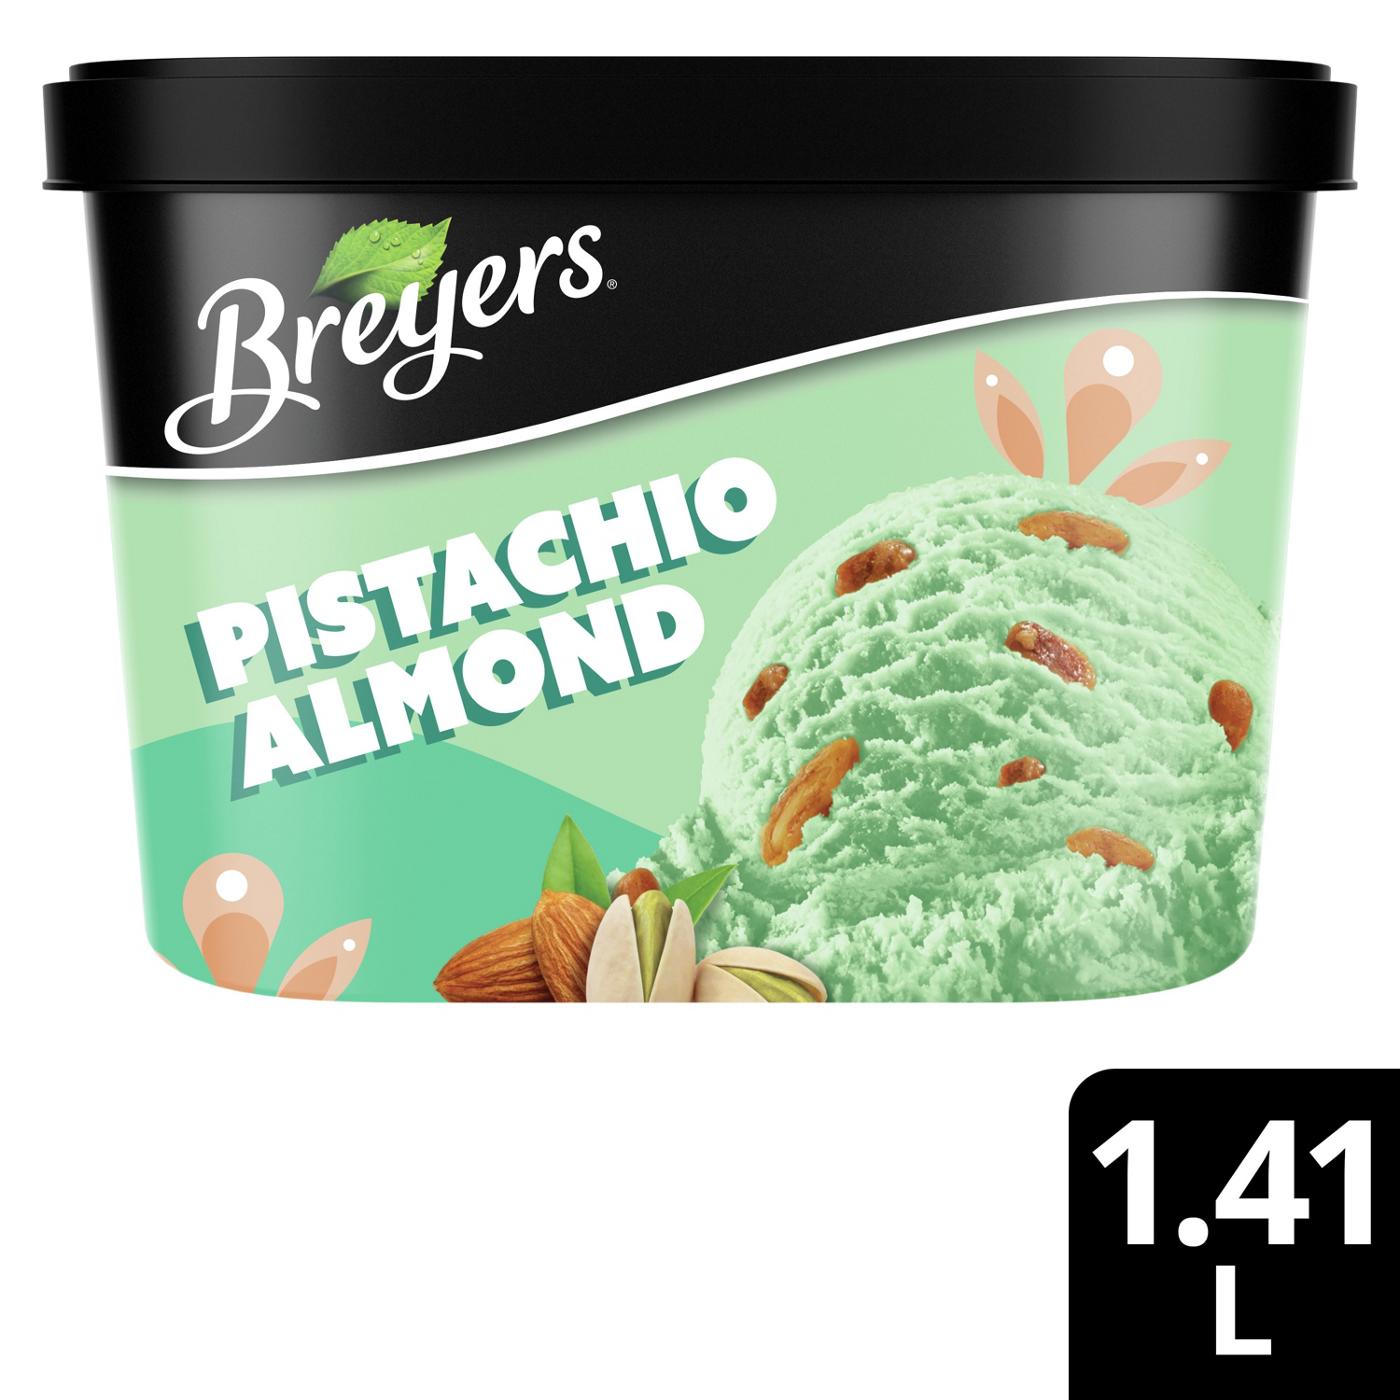 Breyers Pistachio Almond Frozen Dairy Dessert; image 3 of 6